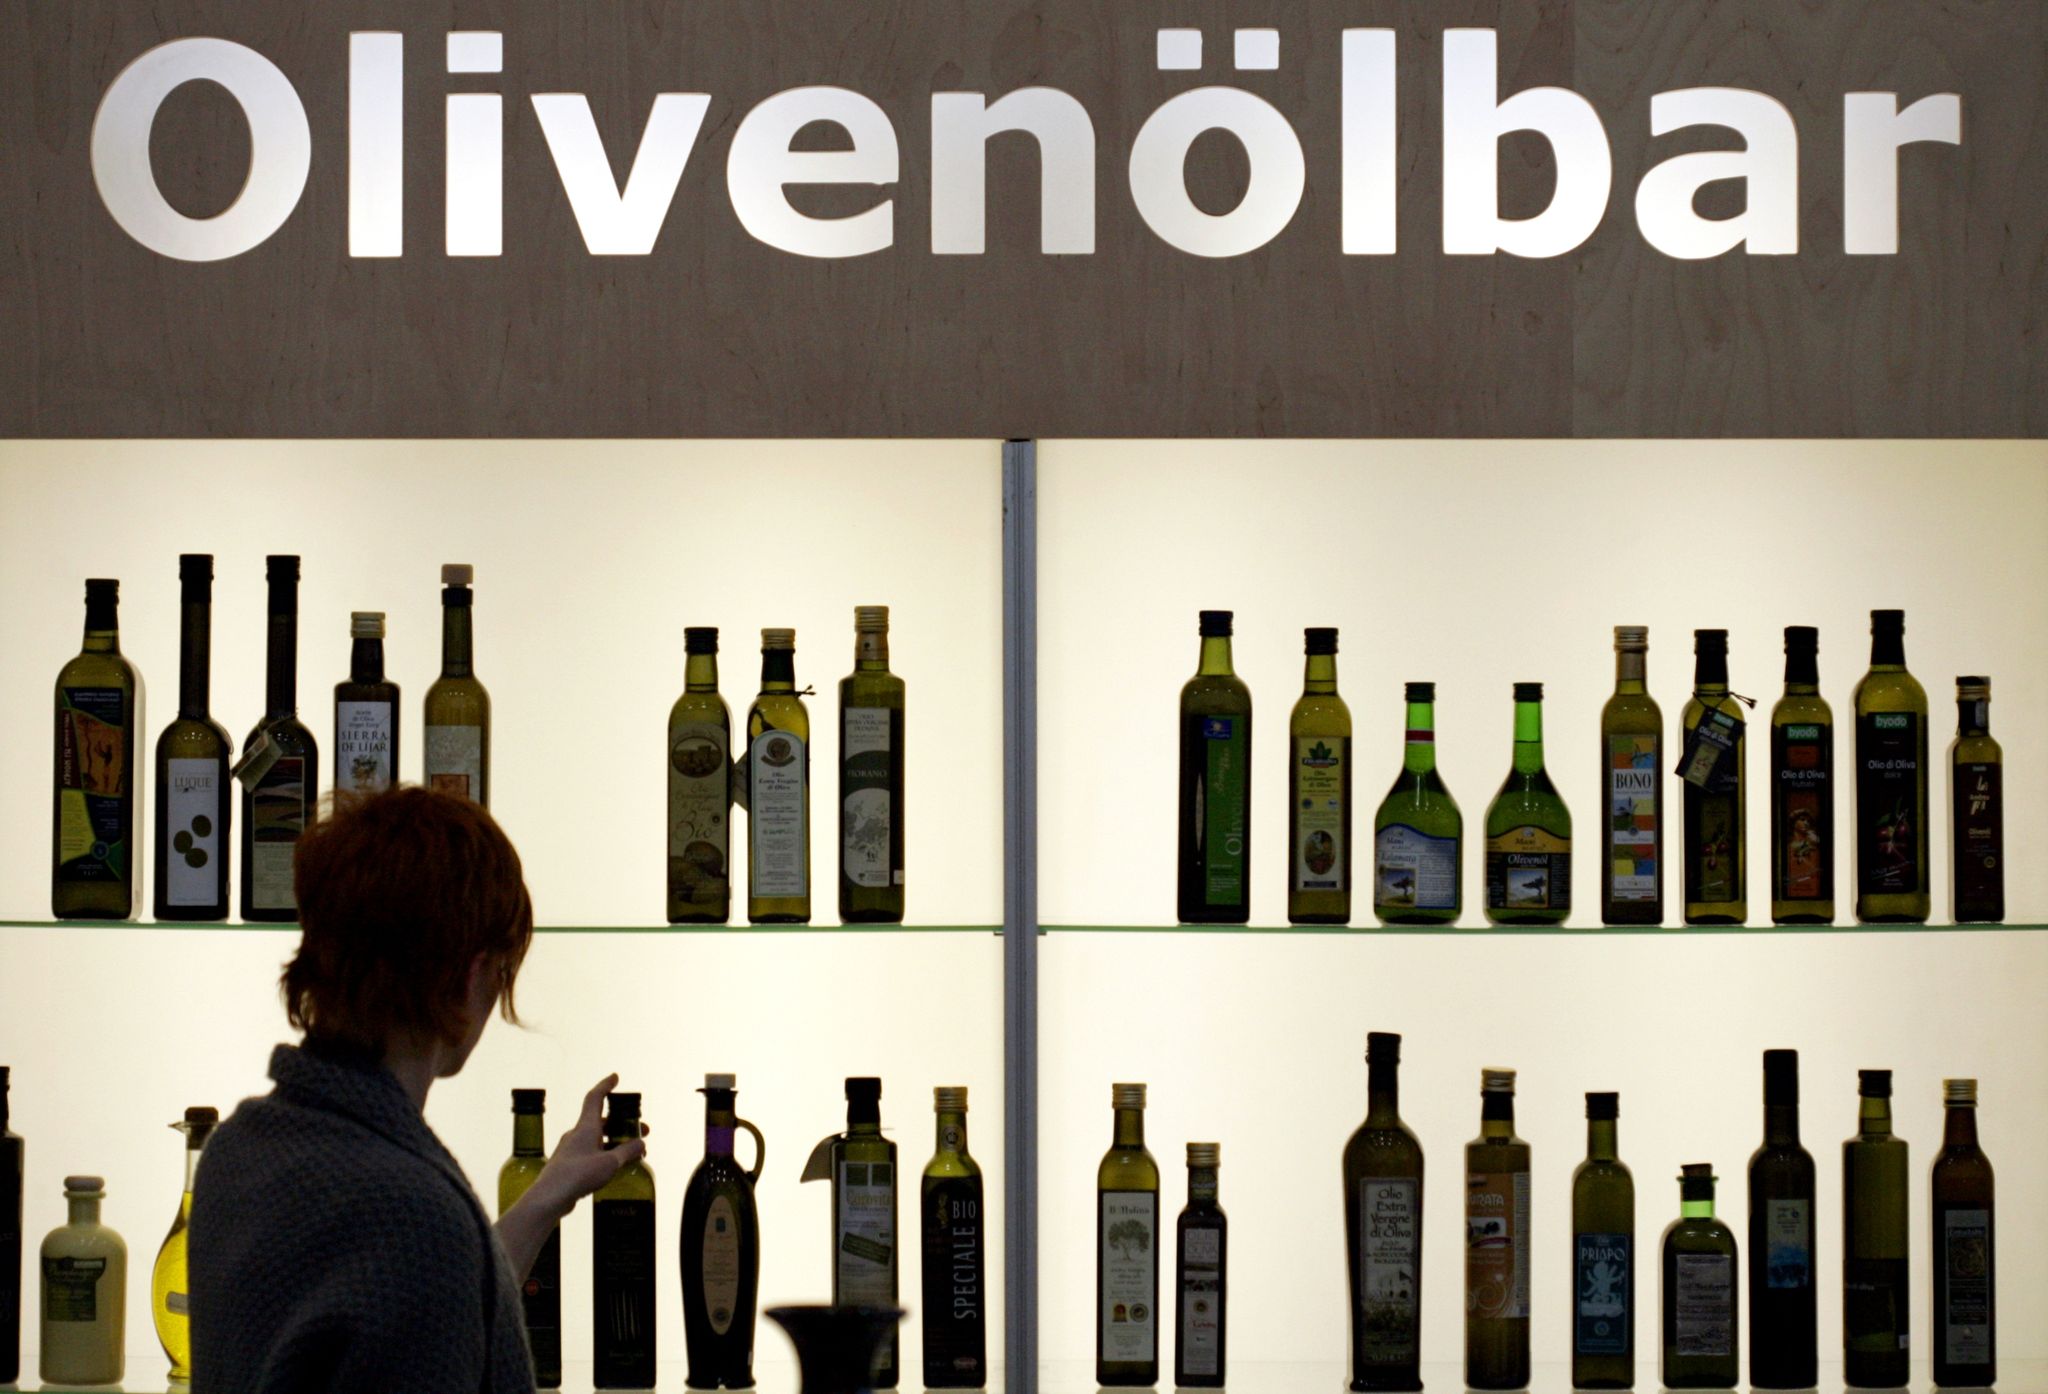 Sind Olivenflaschen einmal geöffnet, muss man damit rechnen, dass die frischen, grasigen Noten schon nach ein, zwei Monaten deutlich abnehmen.